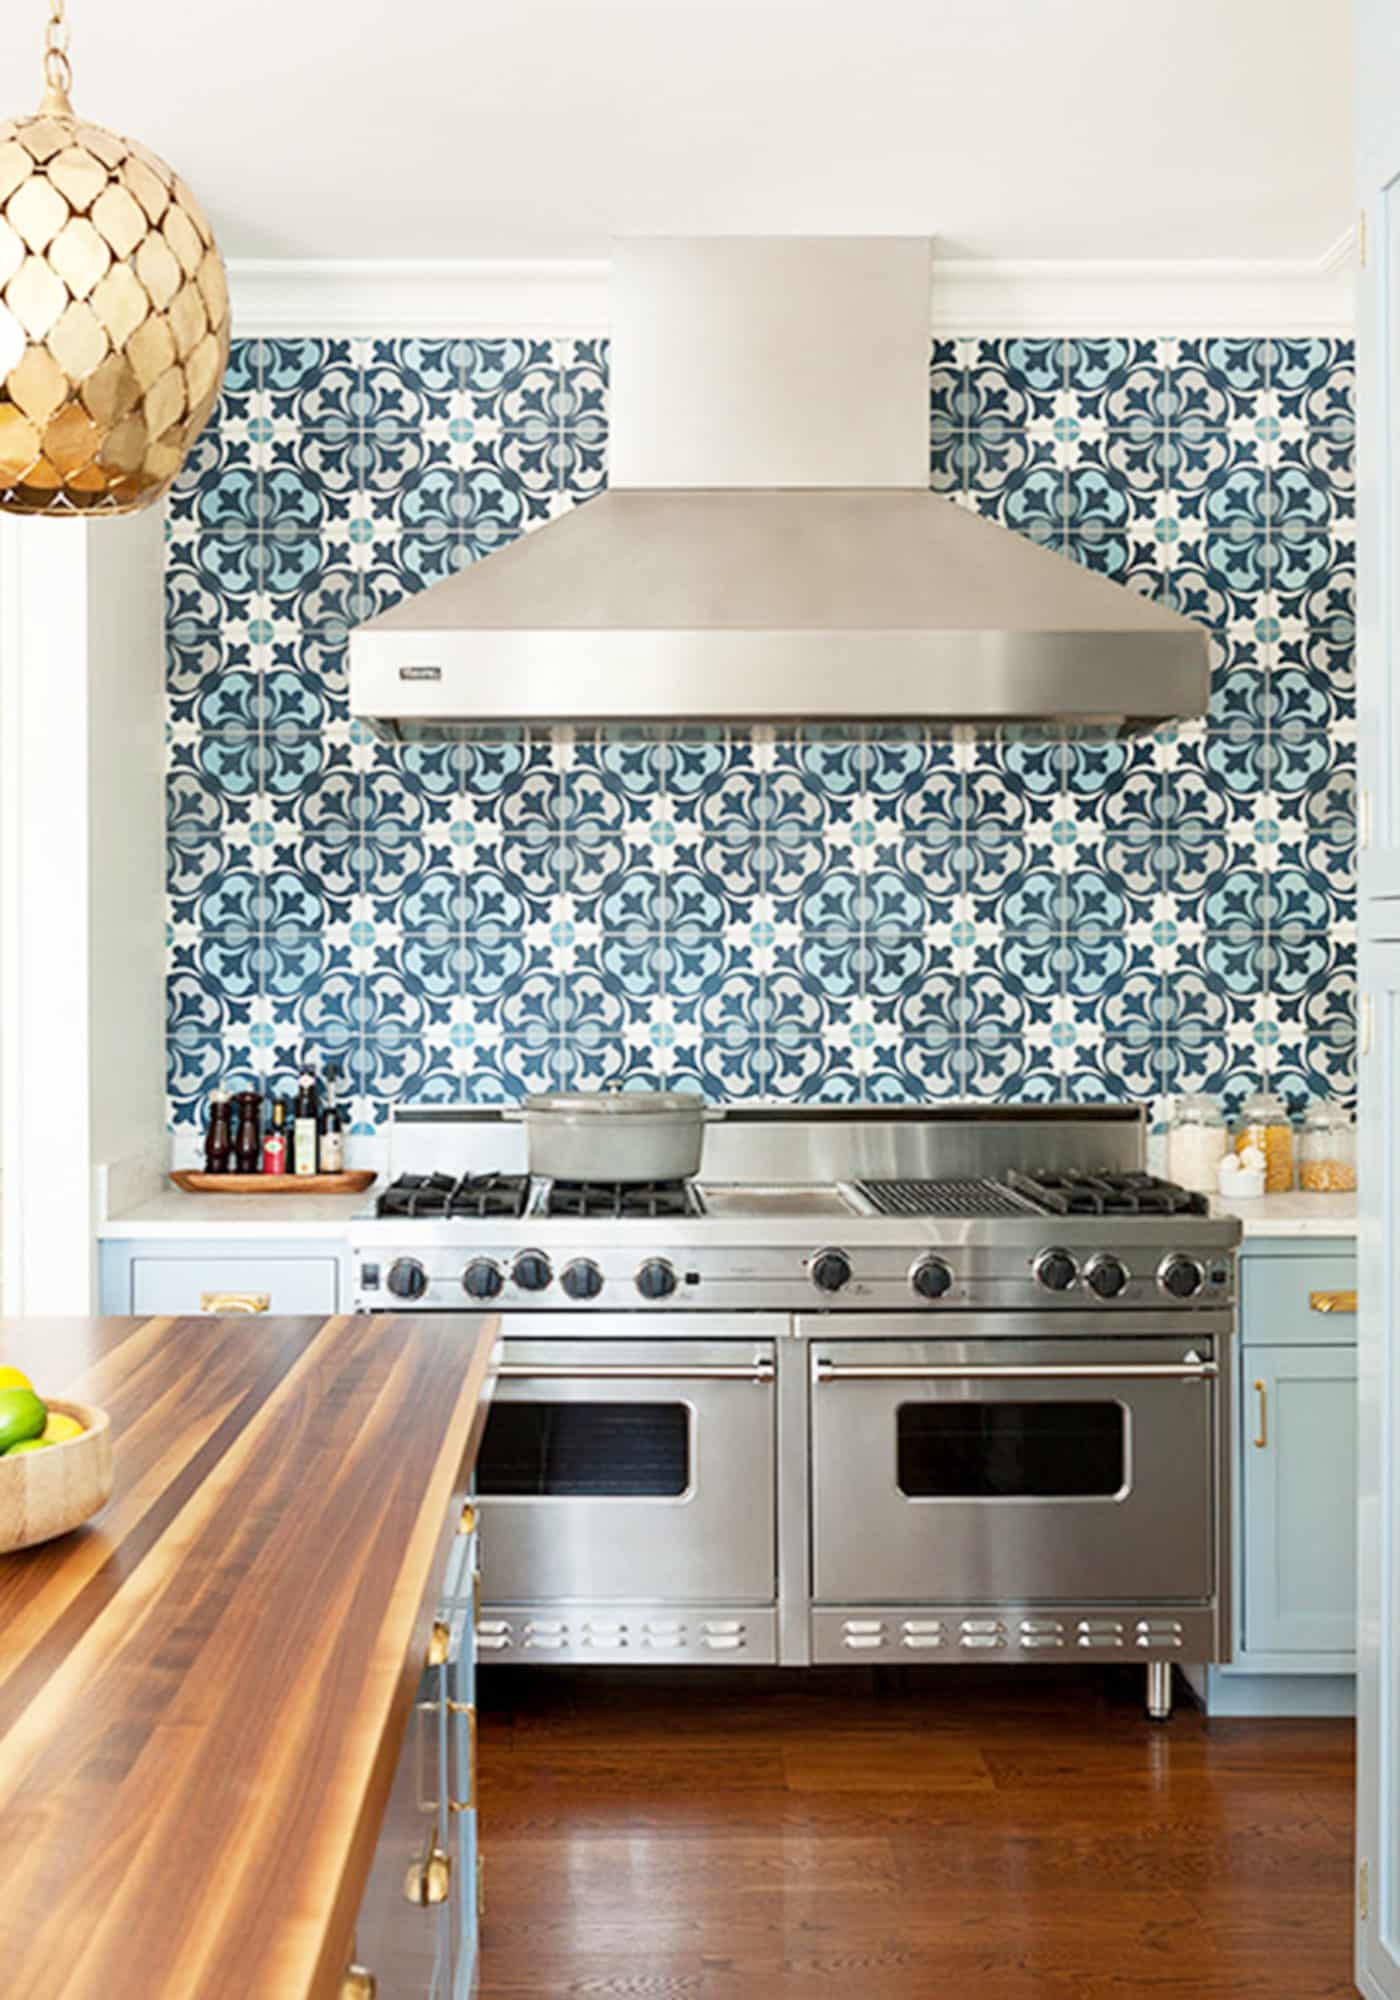 Kitchen Tile Ideas For Backsplash - Image to u